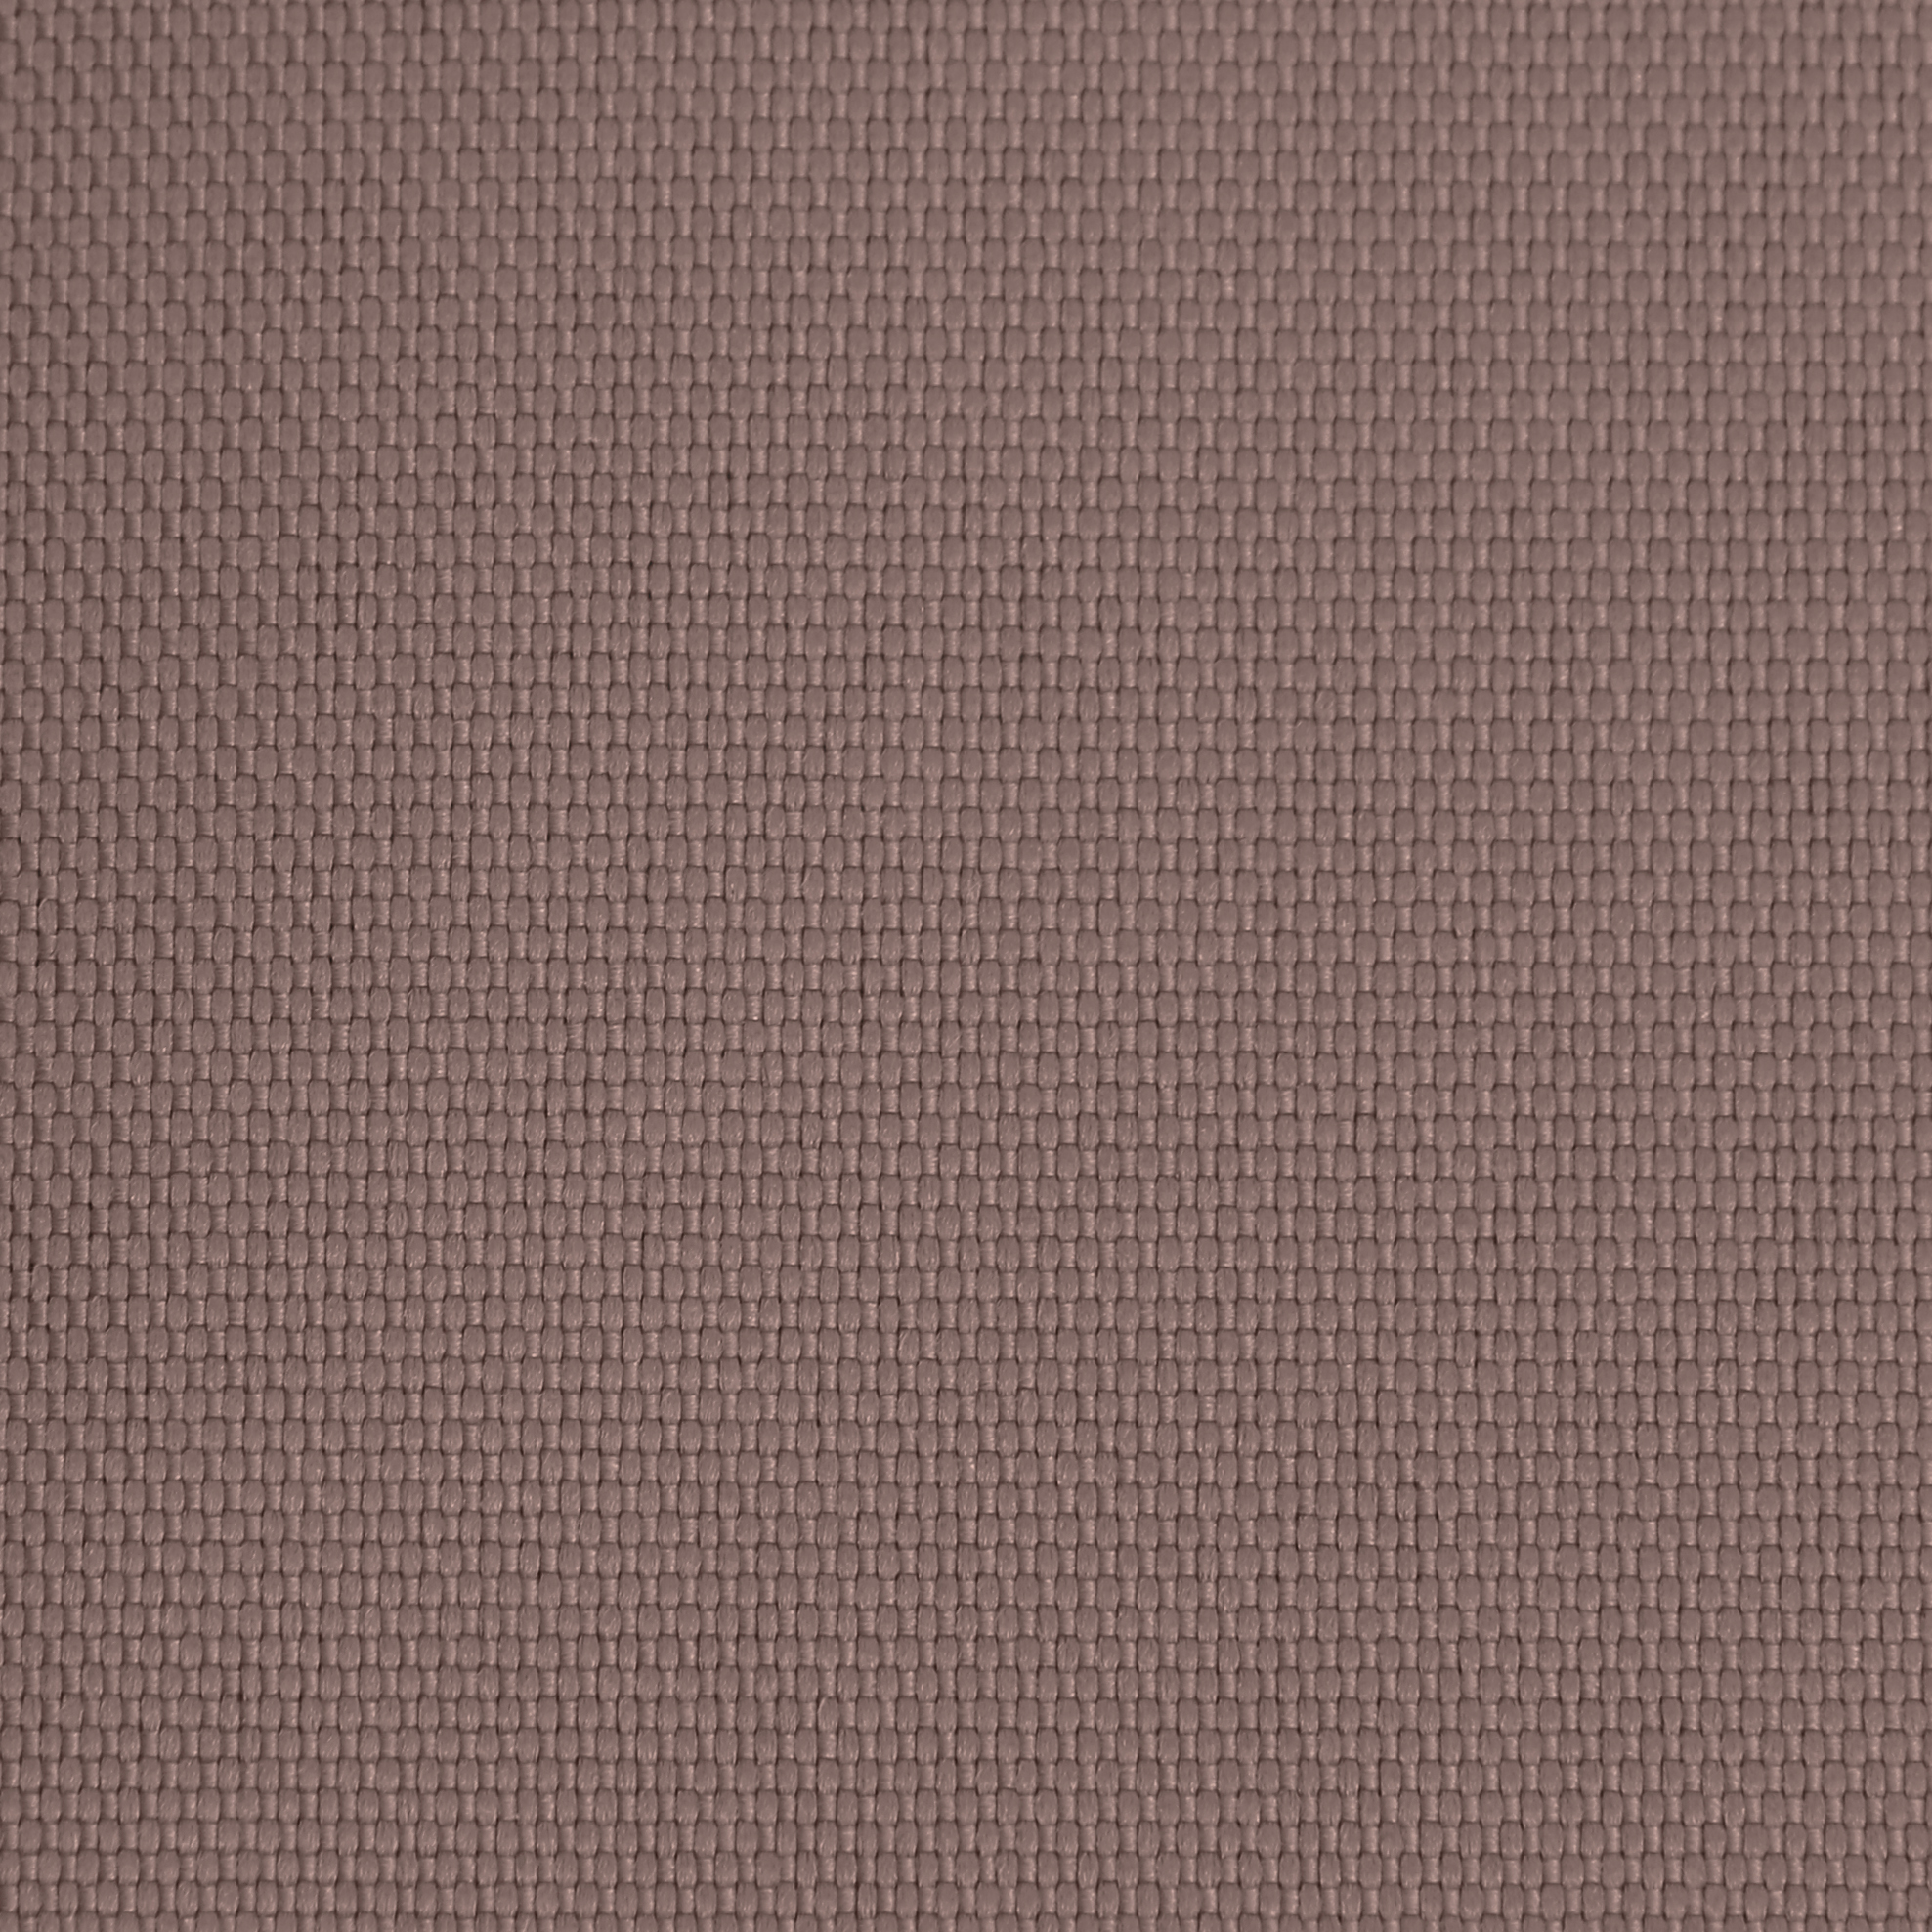 Ткань Оксфорд 600D размер 7м*1,5м арт. 600700670 цвет коричневый